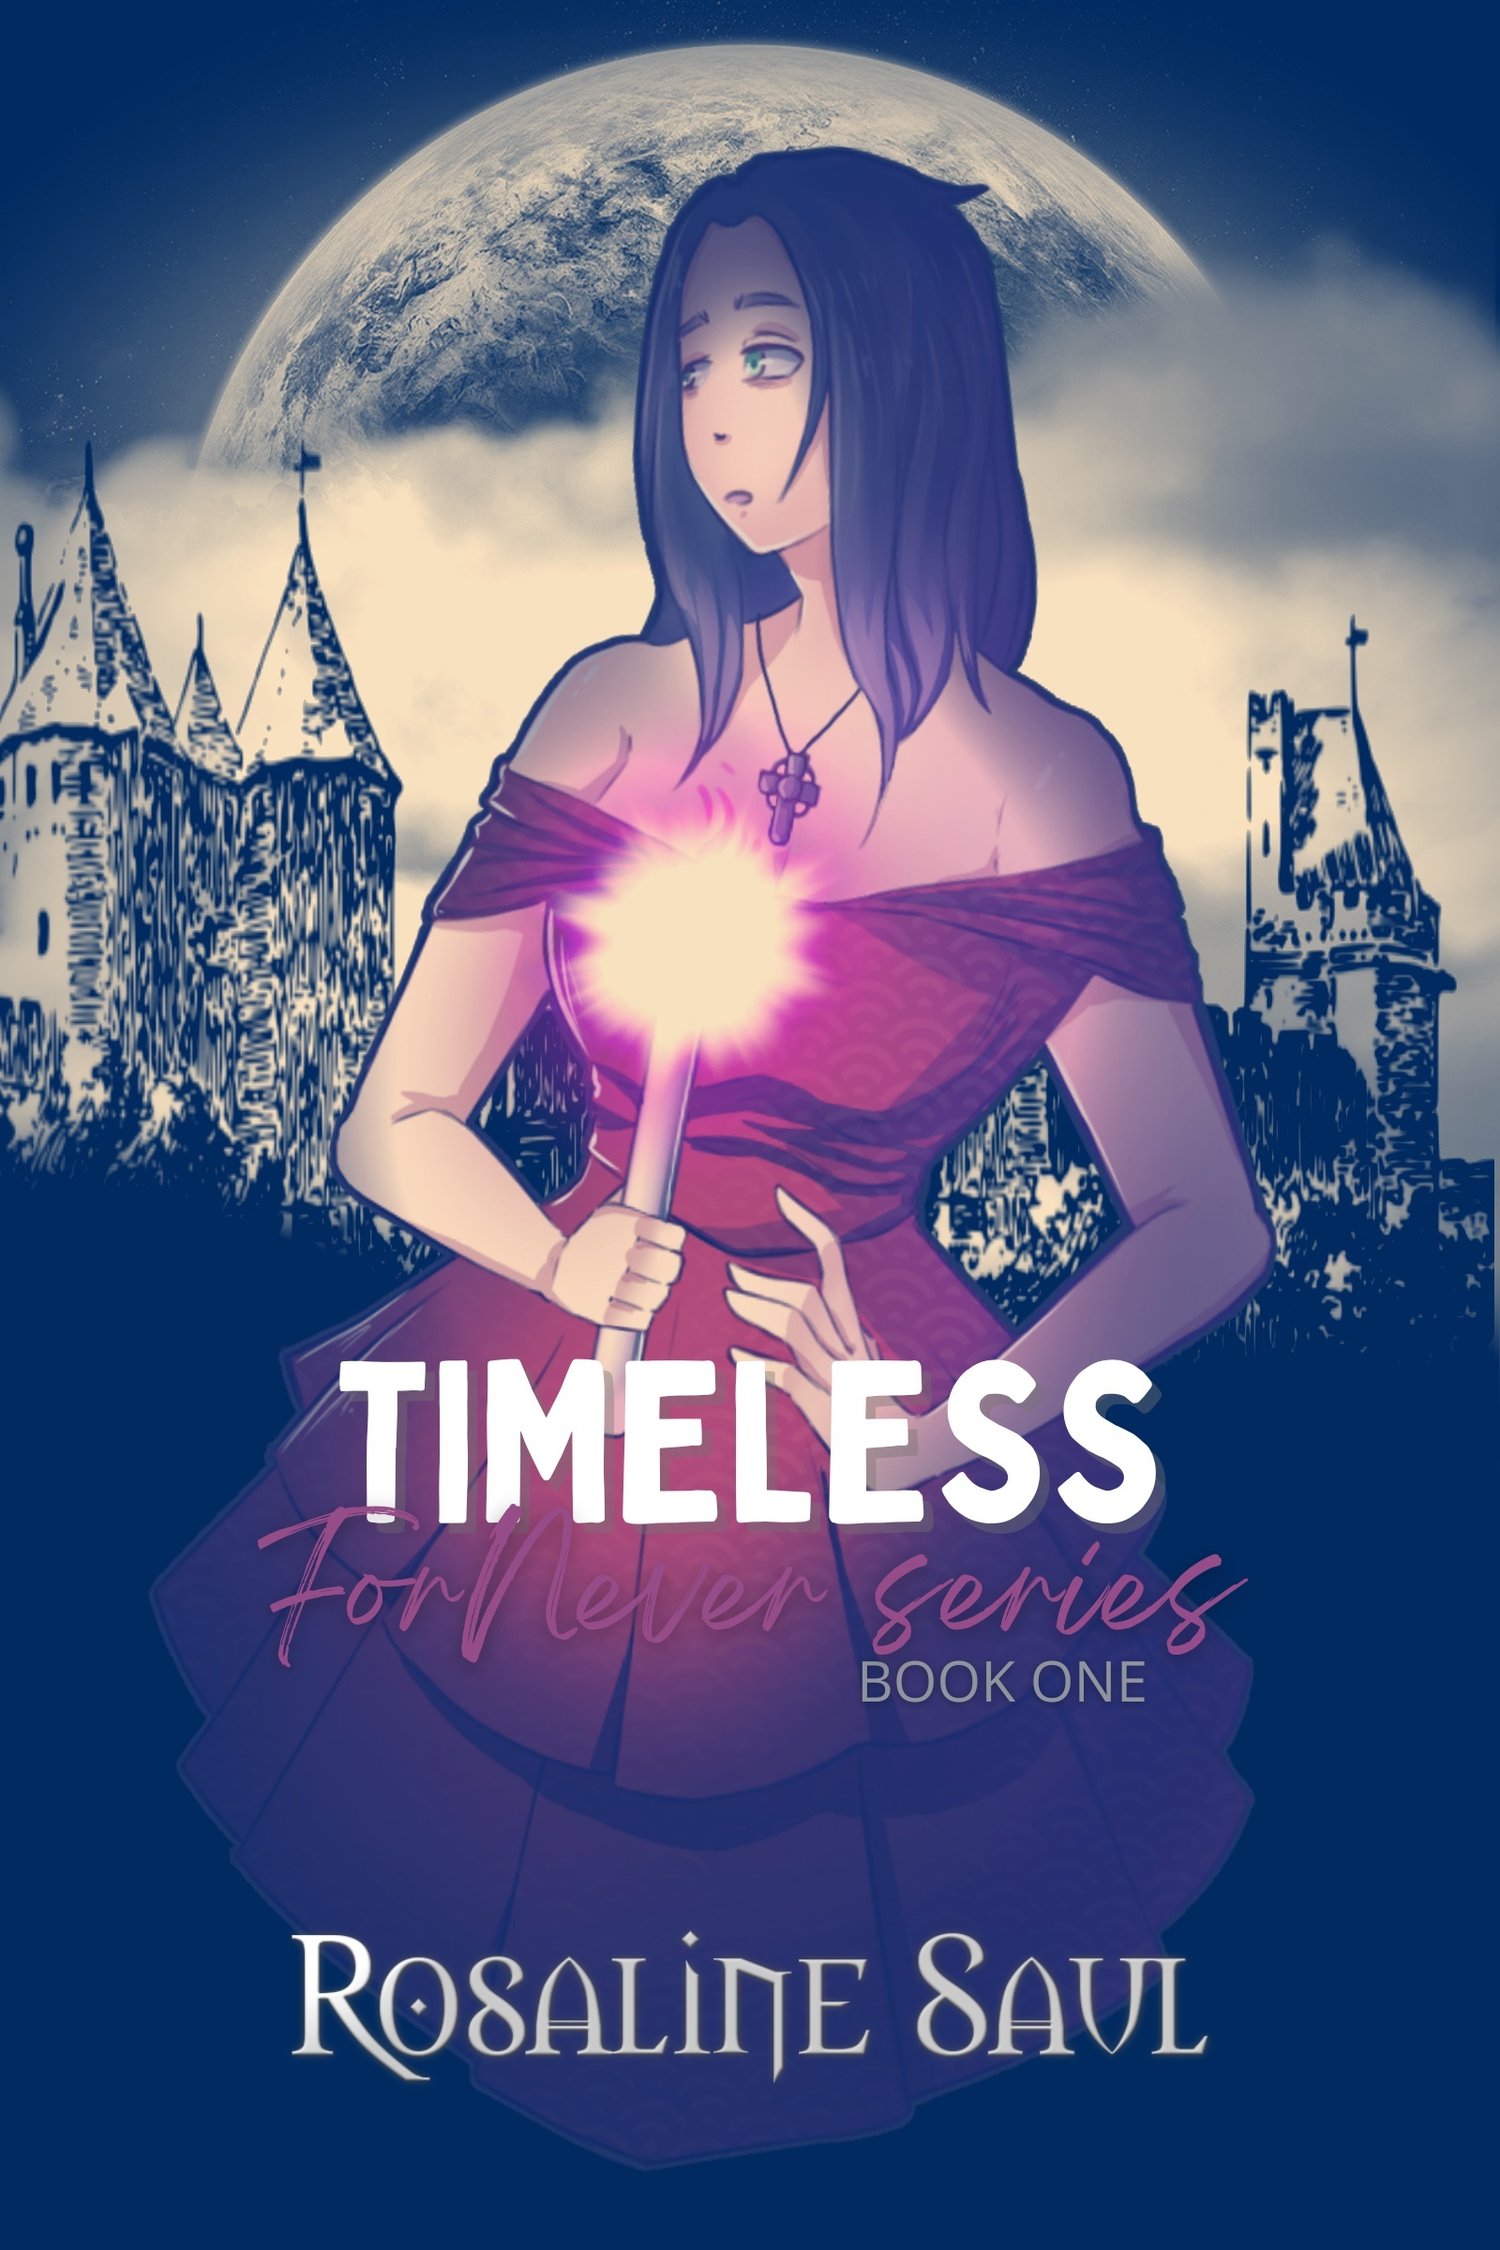 Timeless by Rosaline Saul